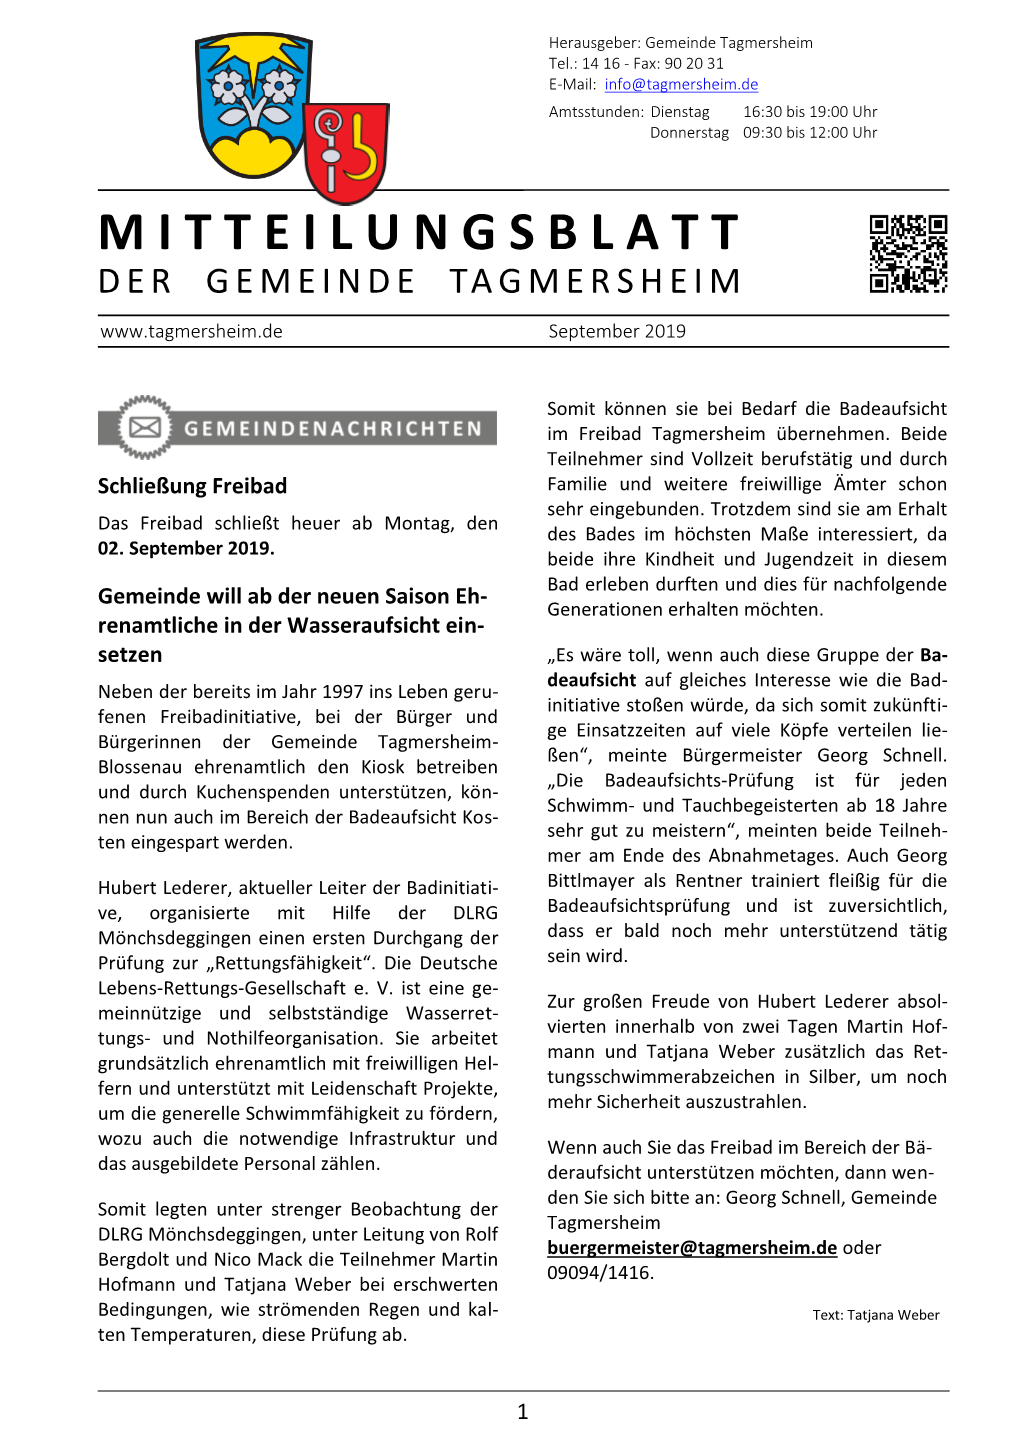 Mitteilungsblatt Der Gemeinde Tagmersheim Ausgabe 09/2019